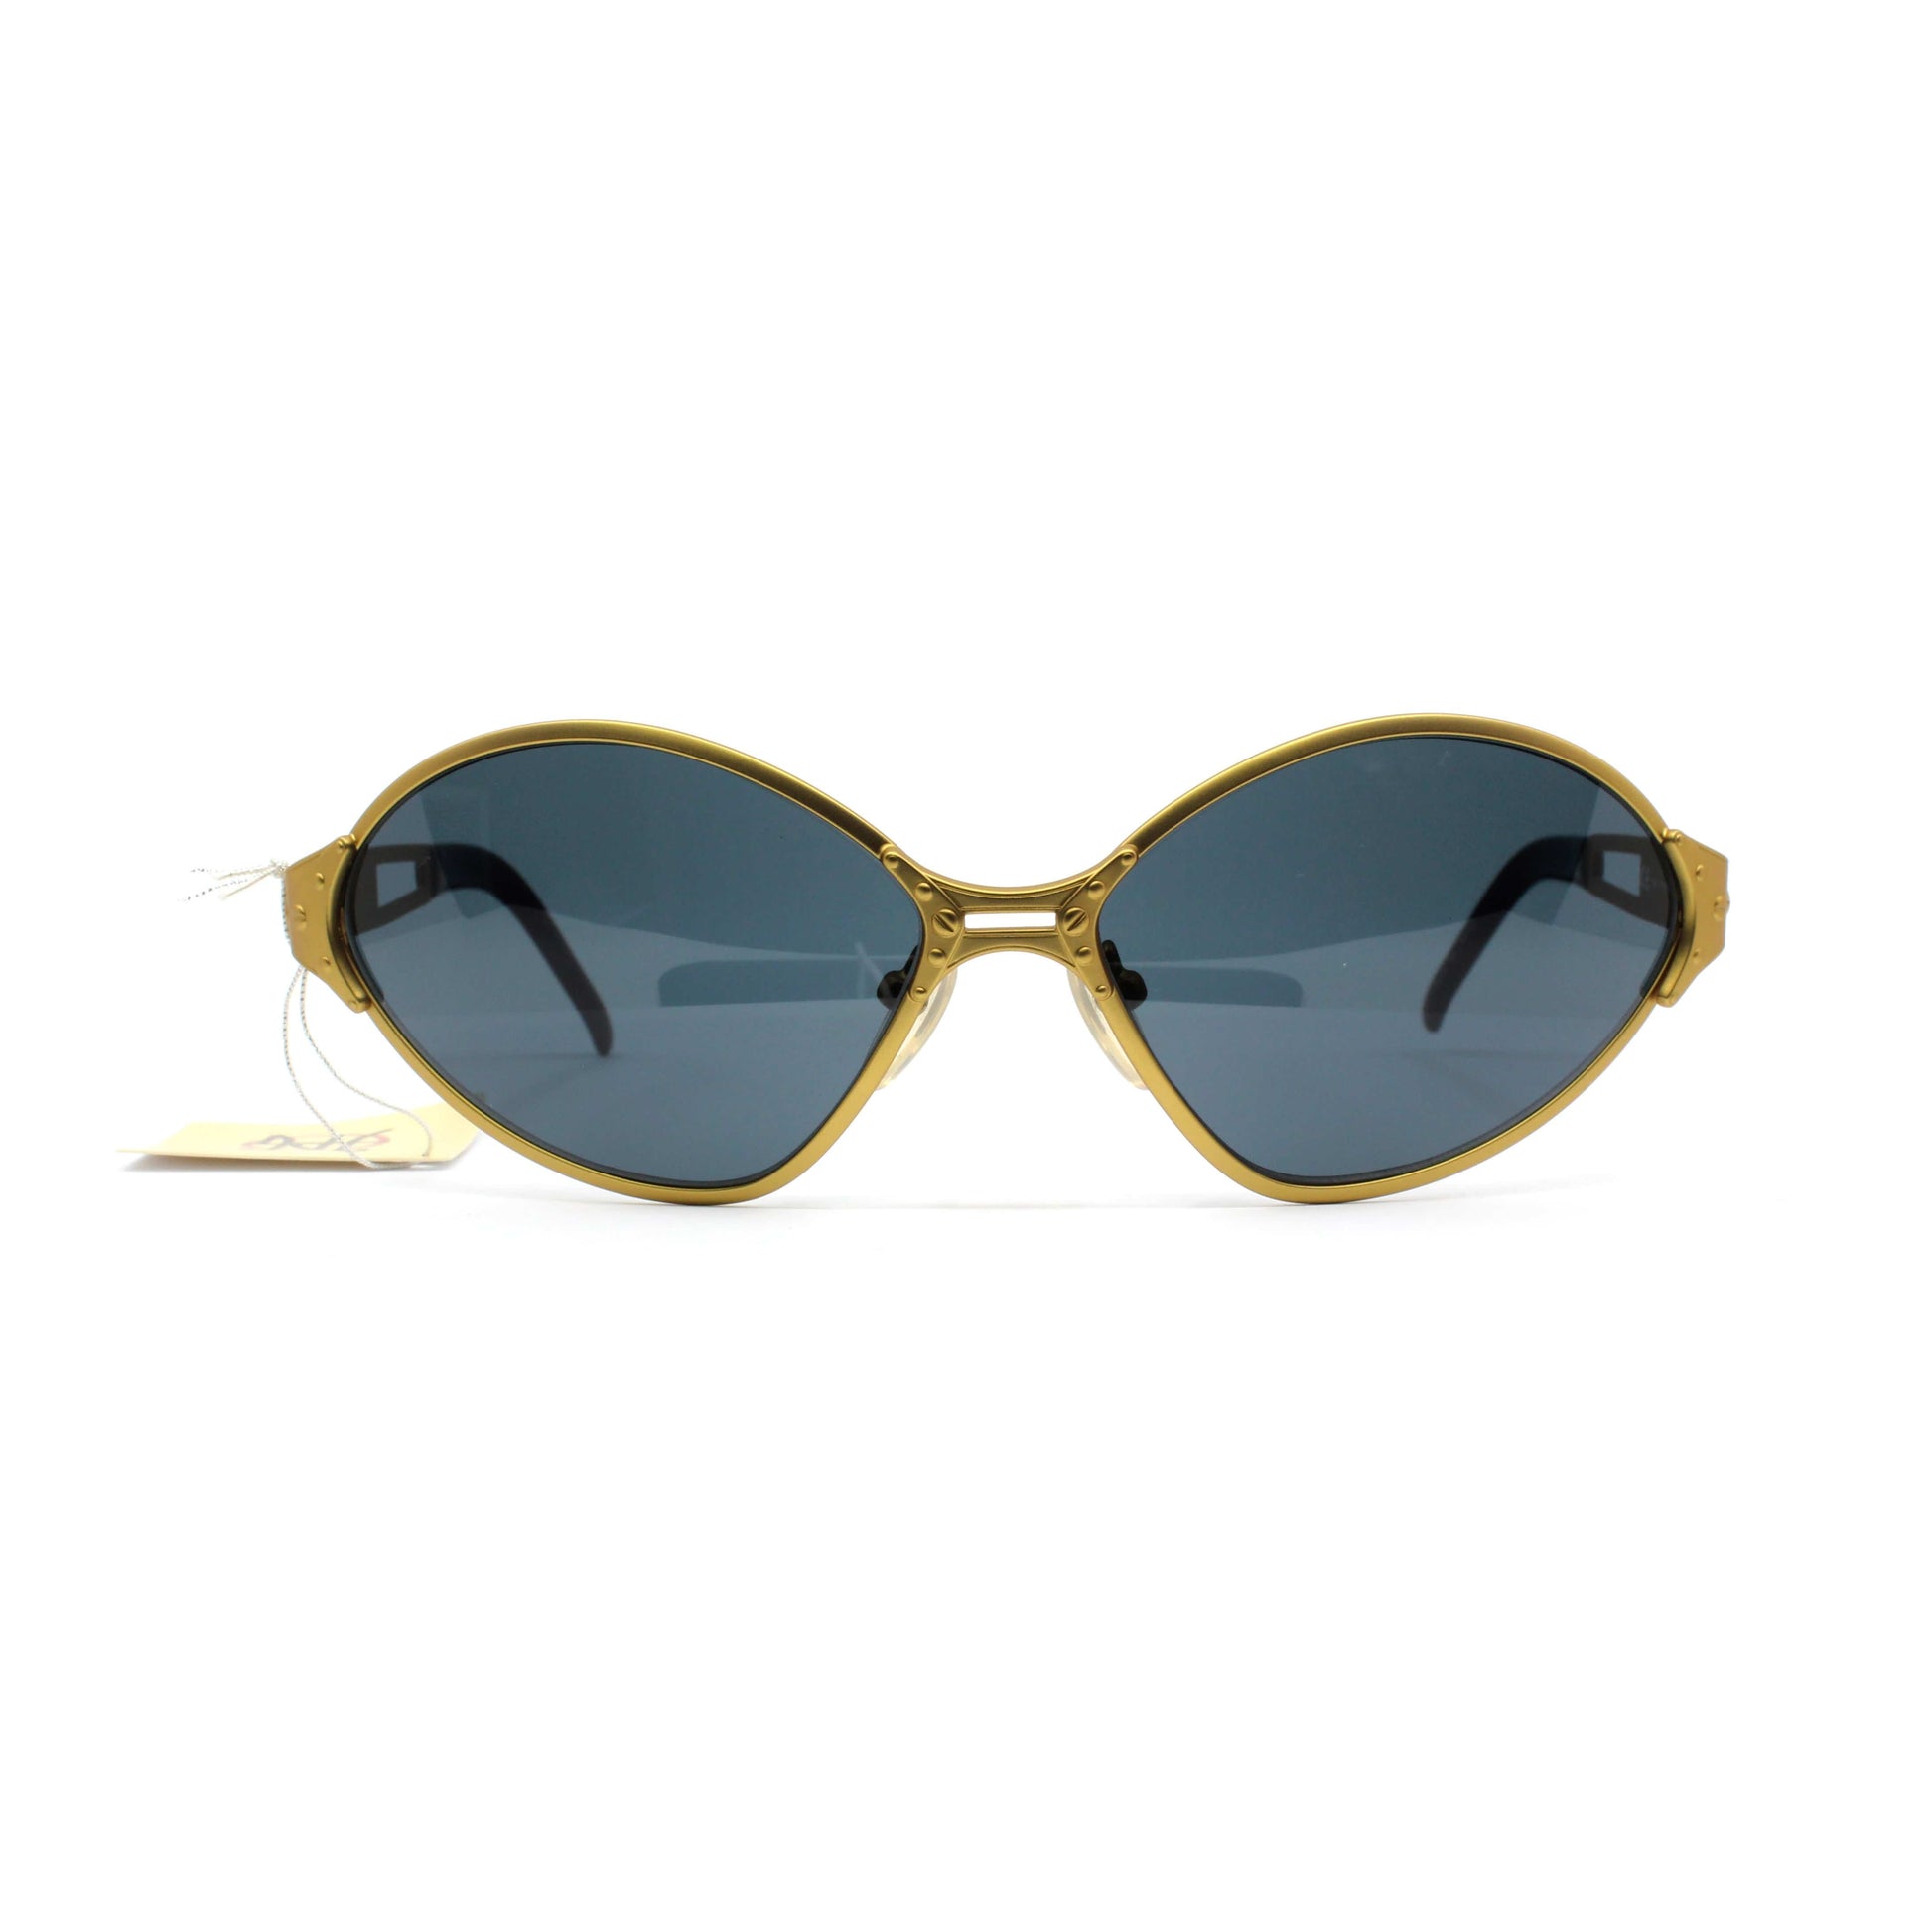 Gold Vintage Jean Paul Gaultier 58-6111 Sunglasses RSTKD Vintage